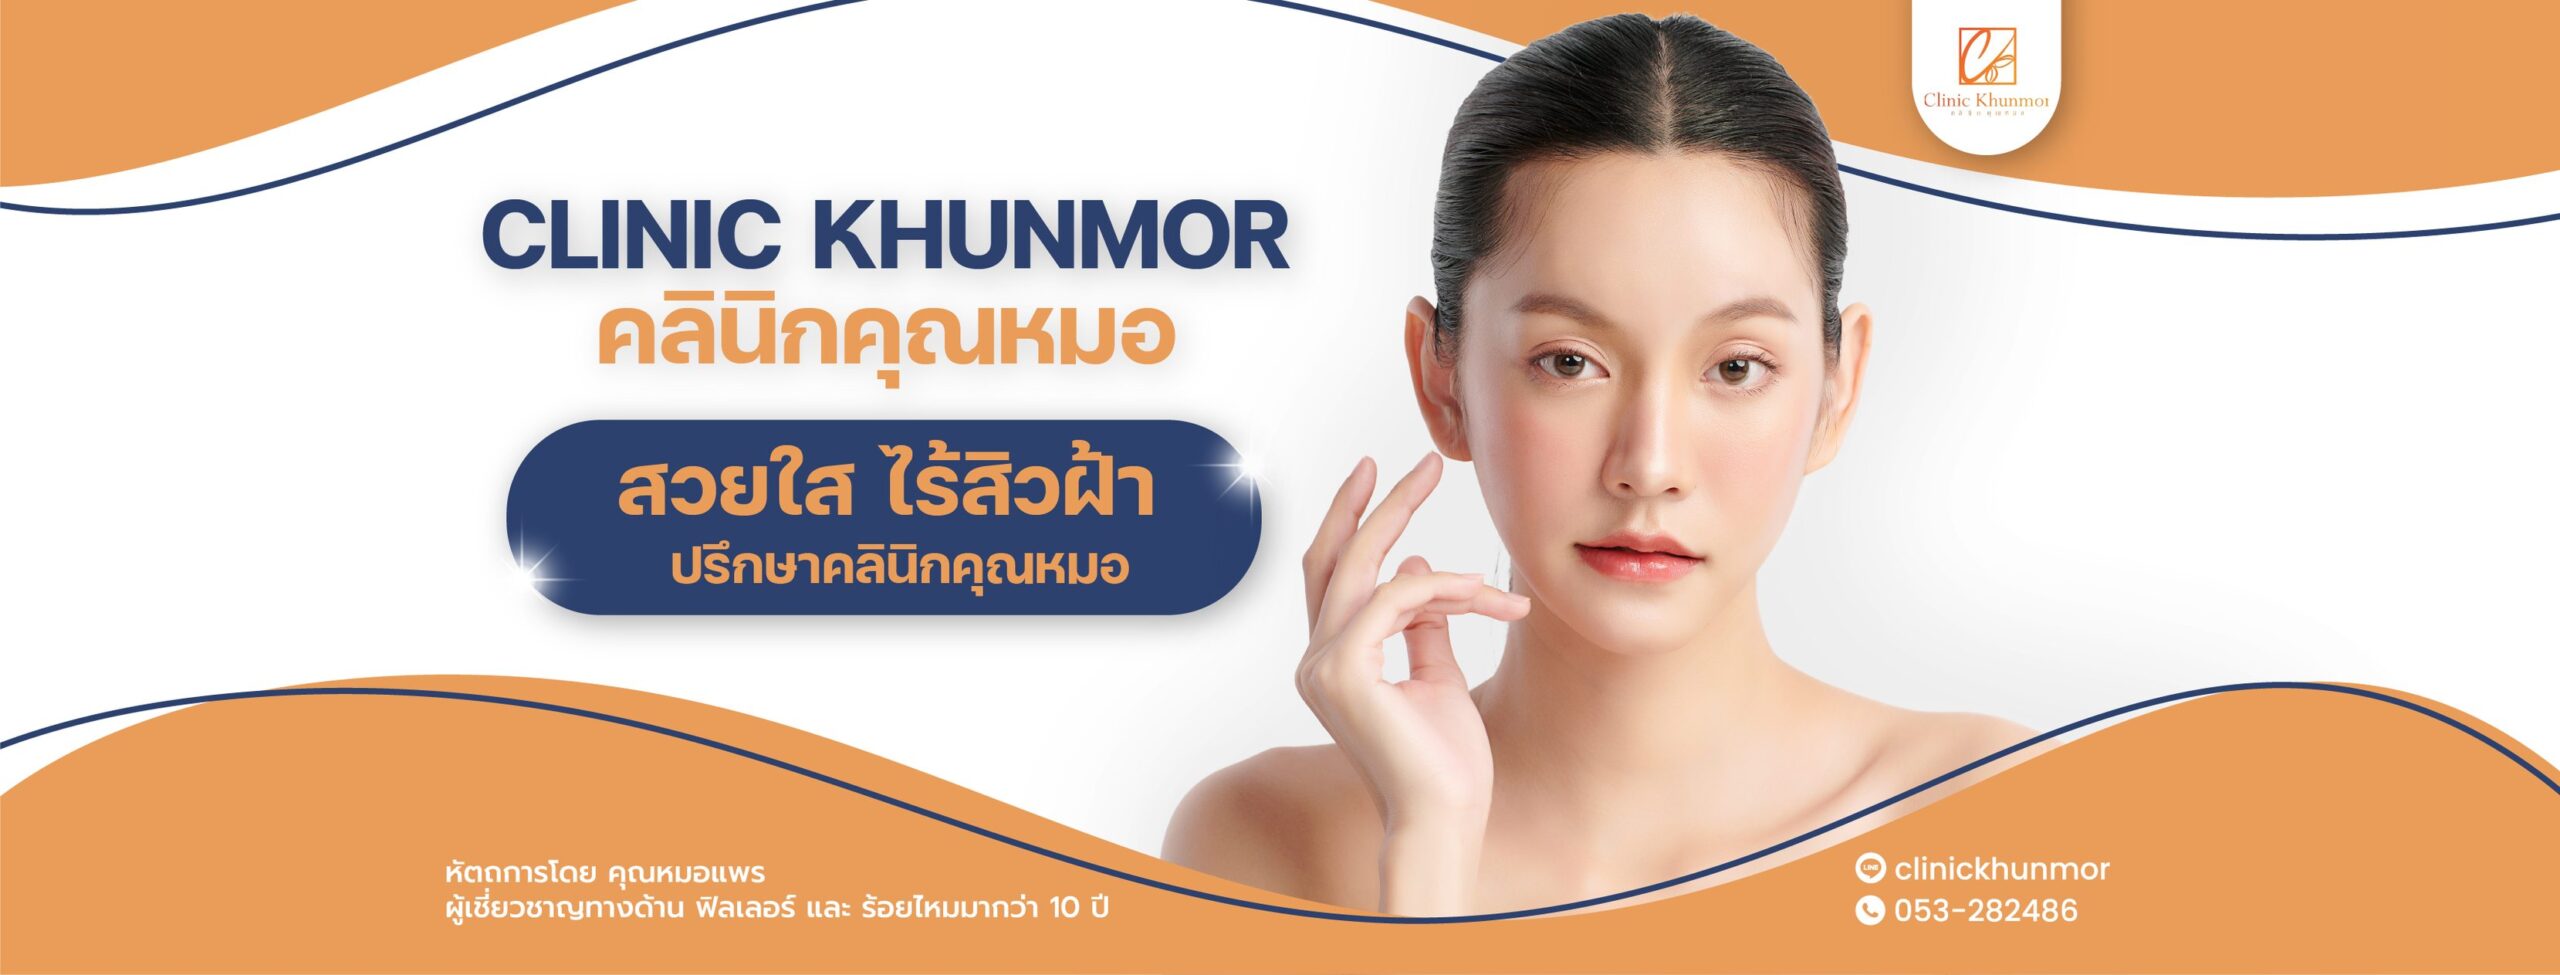 Clinic Khunmor คลินิกกดสิว เชียงใหม่